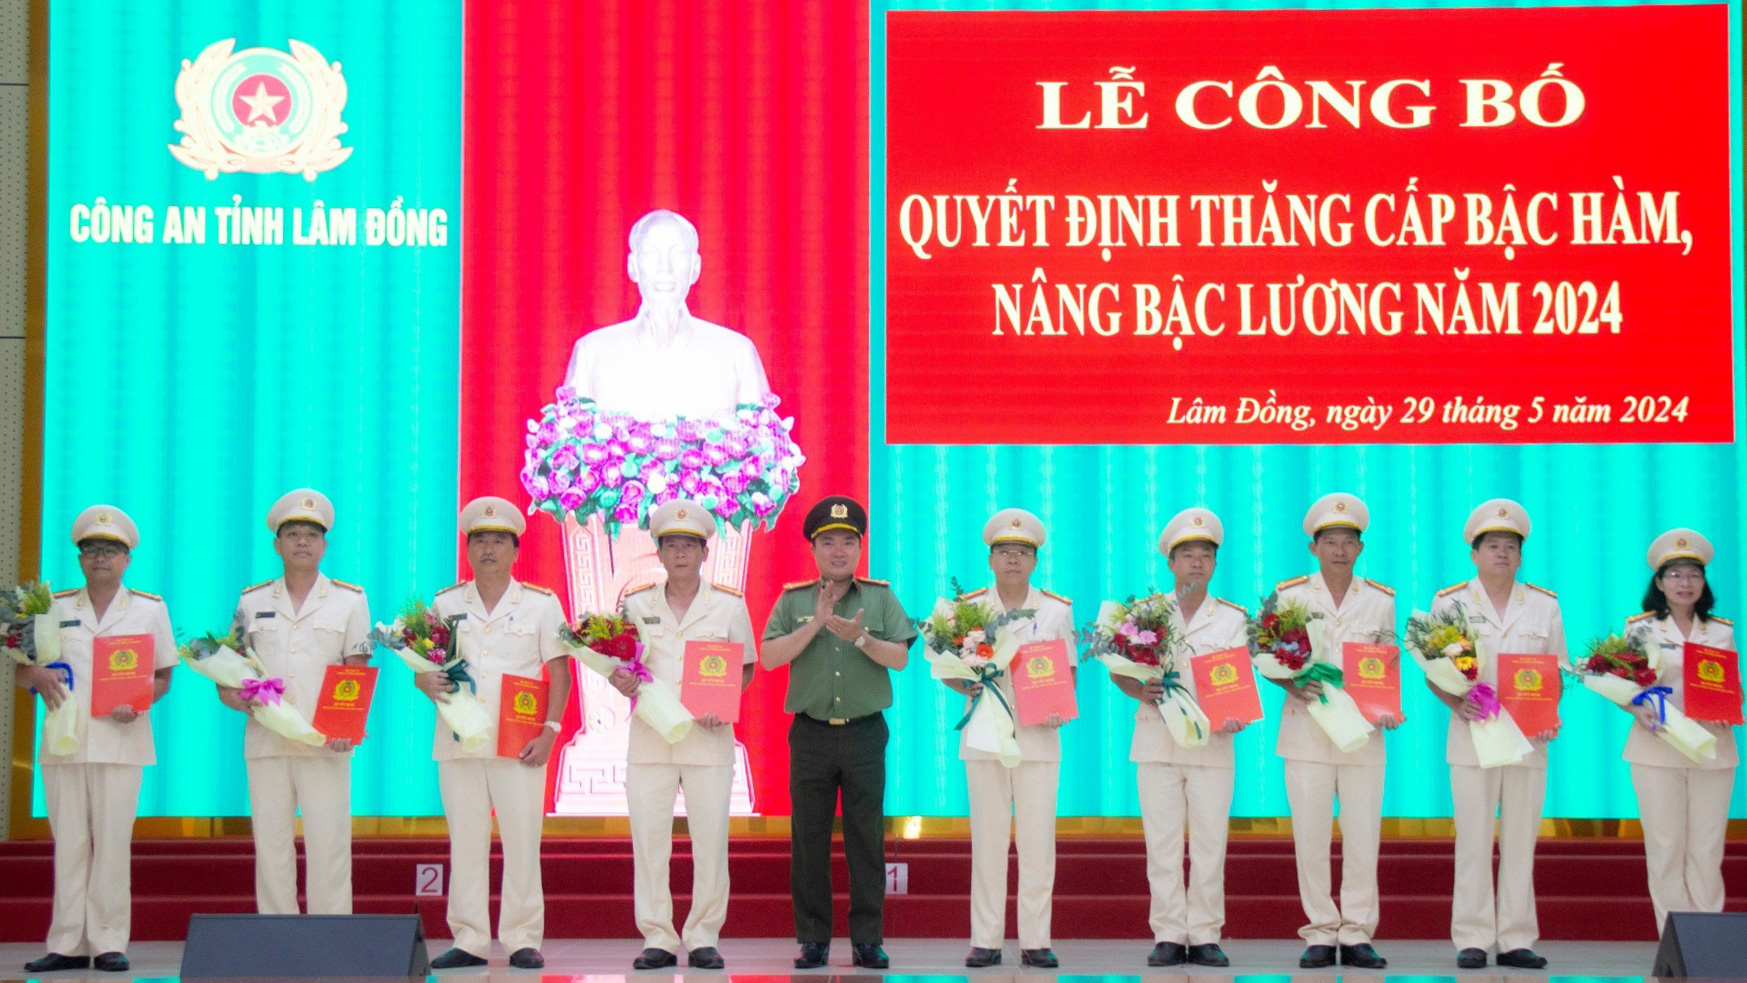 Đại tá Trương Minh Đương trao Quyết định nâng lương, thăng cấp bậc hàm của Bộ trưởng Bộ Công an cho các lãnh đạo Công an đơn vị, địa phương